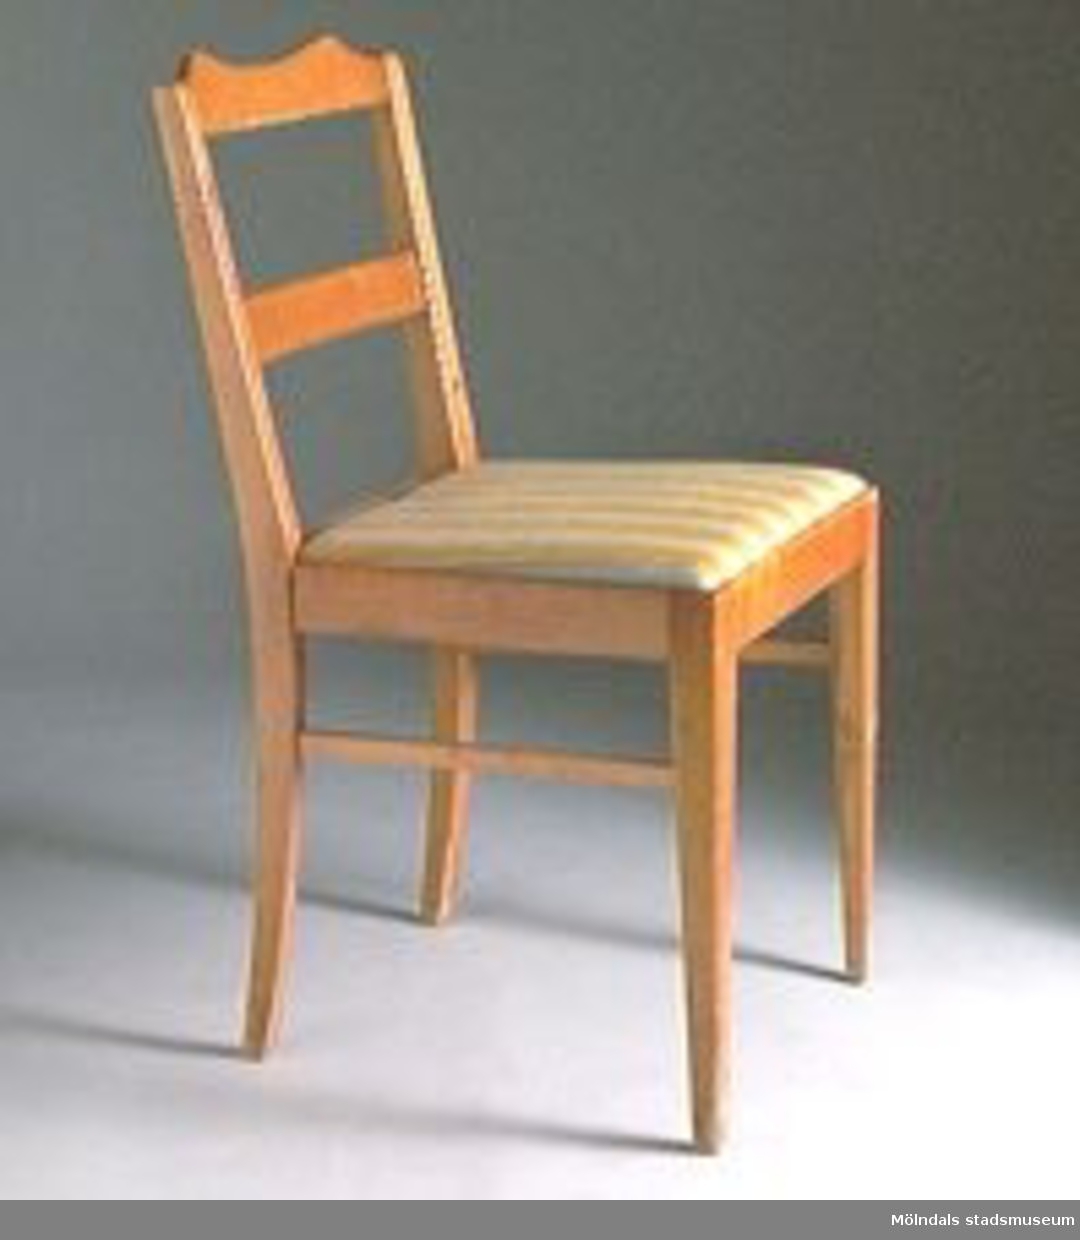 Stol med rygg (två vågräta brädor). R03115:1 Sitsen lös och klädd med tyg som har gula och gråa ränder (f.d MM01912:1). 
R0315:2 En stol är oklädd. Den stolen har fast och lackad träsits (f.d. MM01912:4).

Stol MM01912:3-4 utgallrade 2002-01-17. Överförda till rekvisita R03115:1-2.